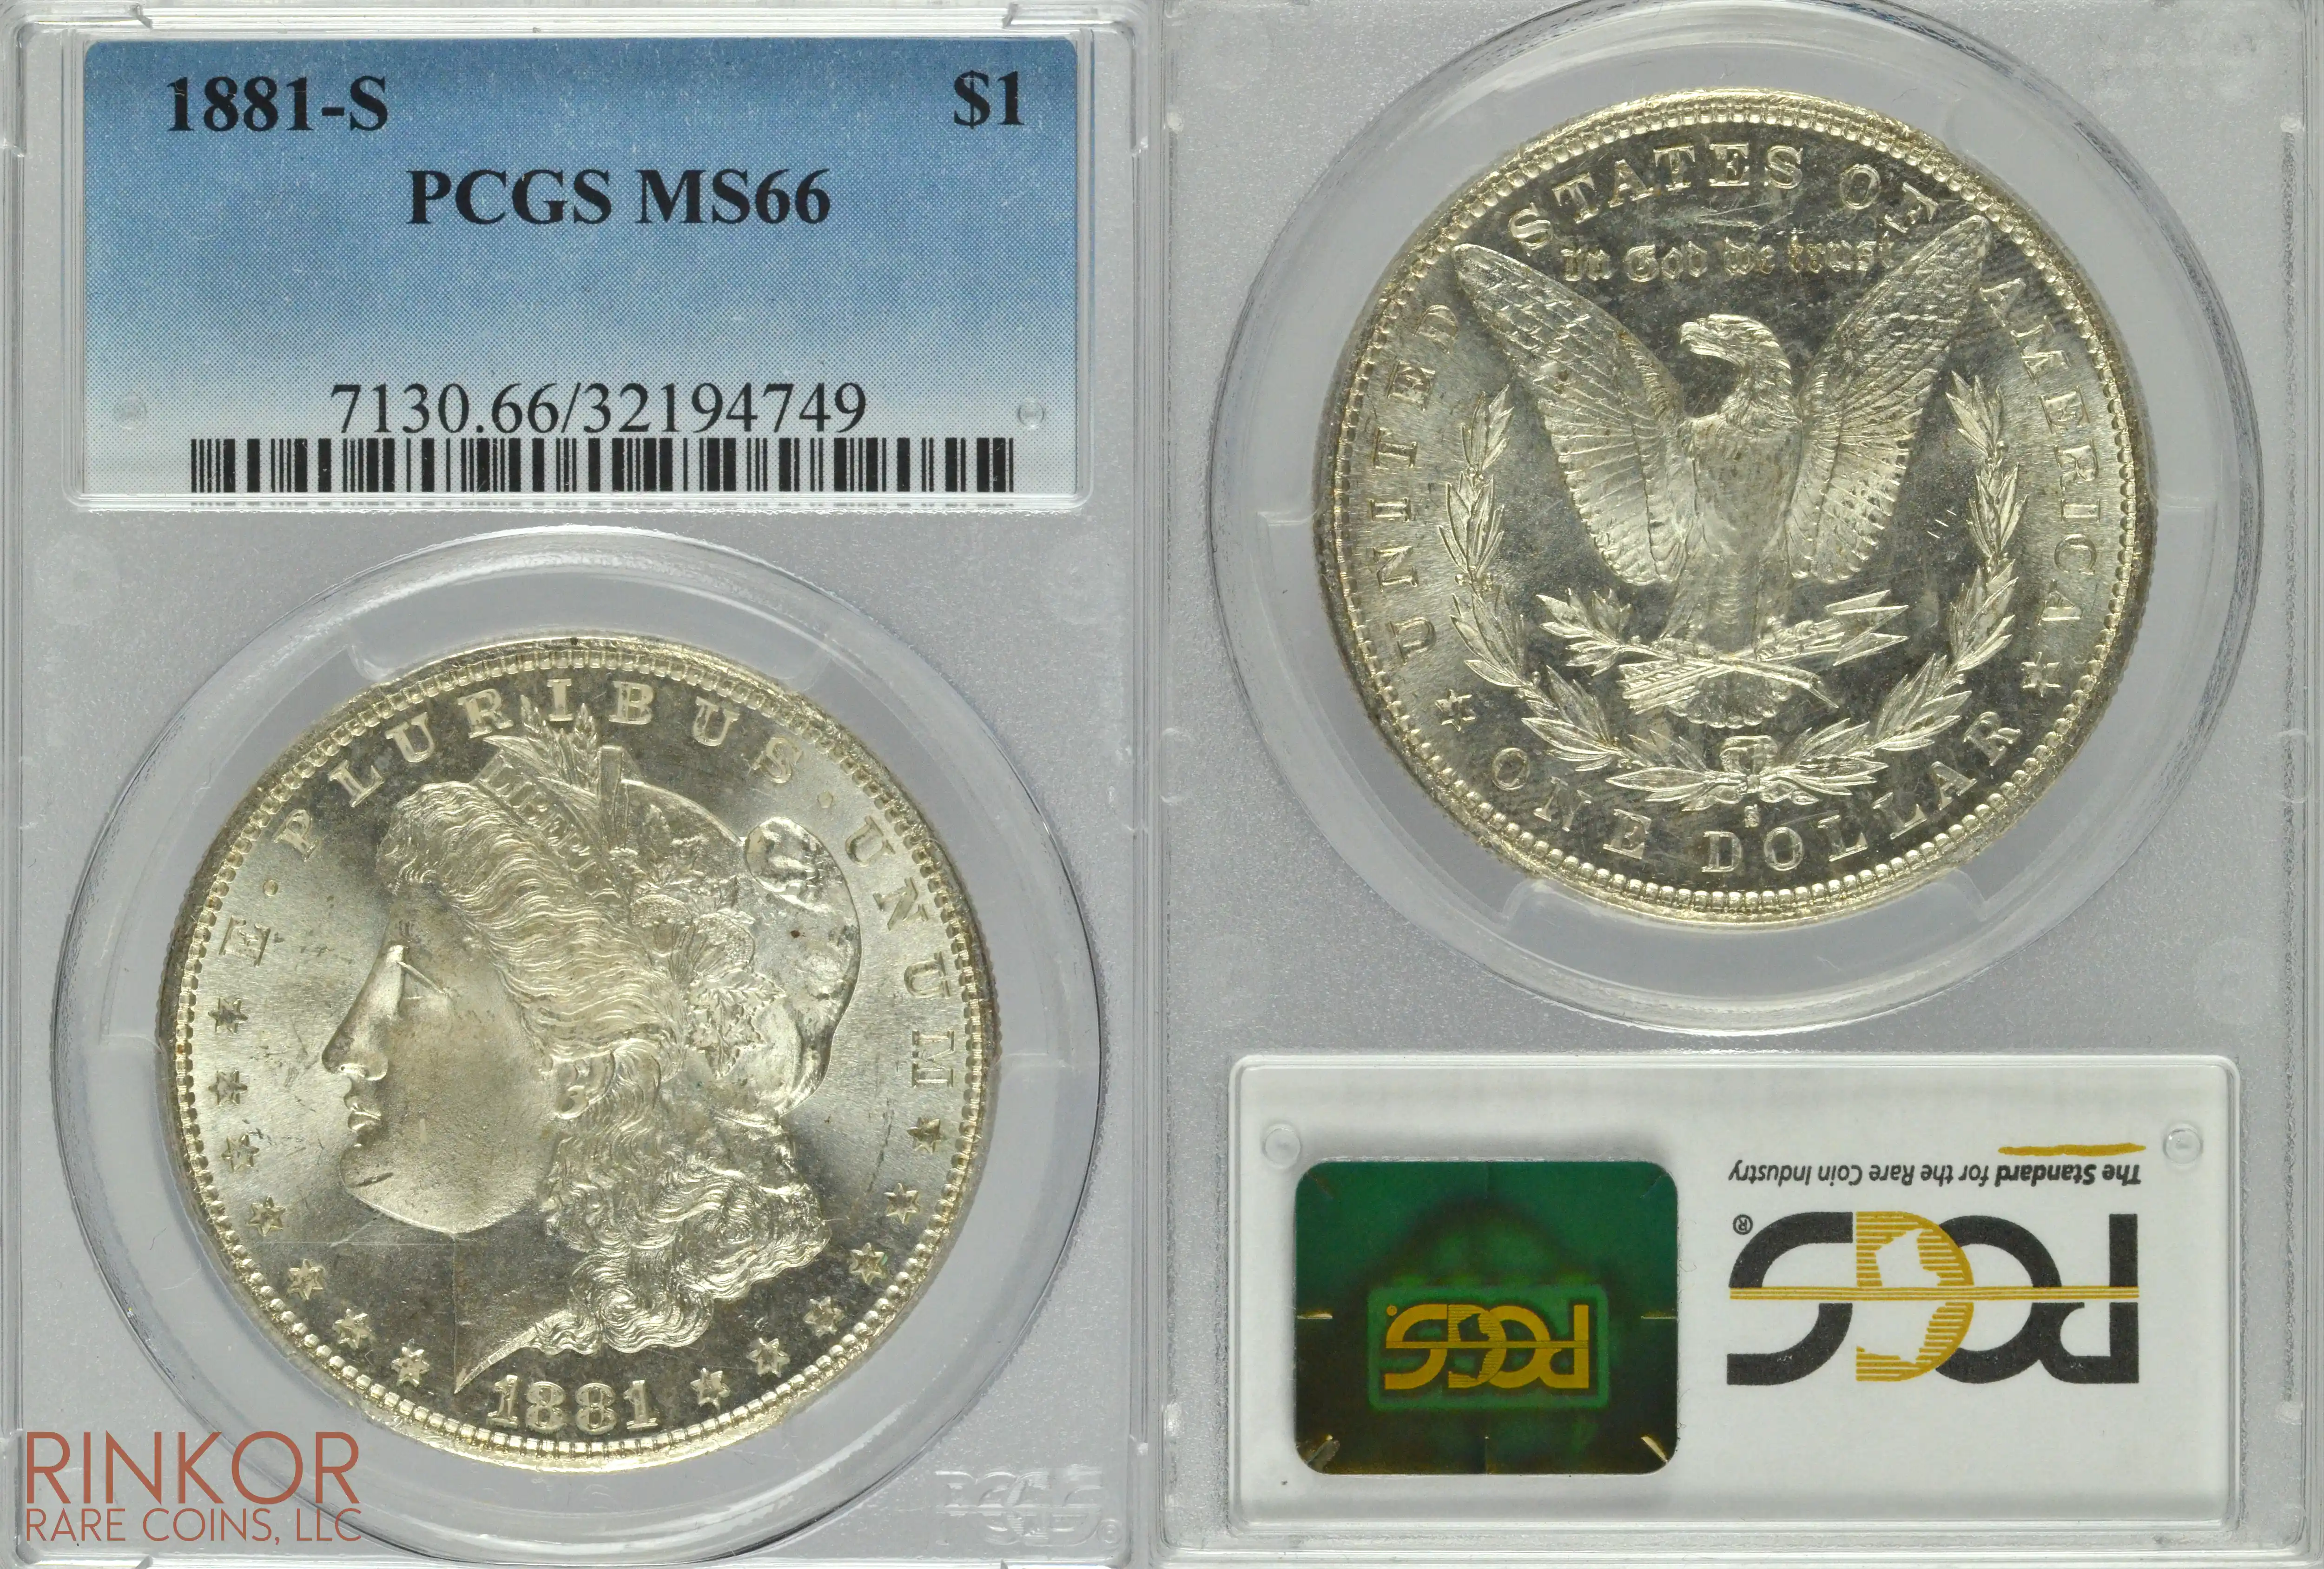 1881-S $1 PCGS MS 66